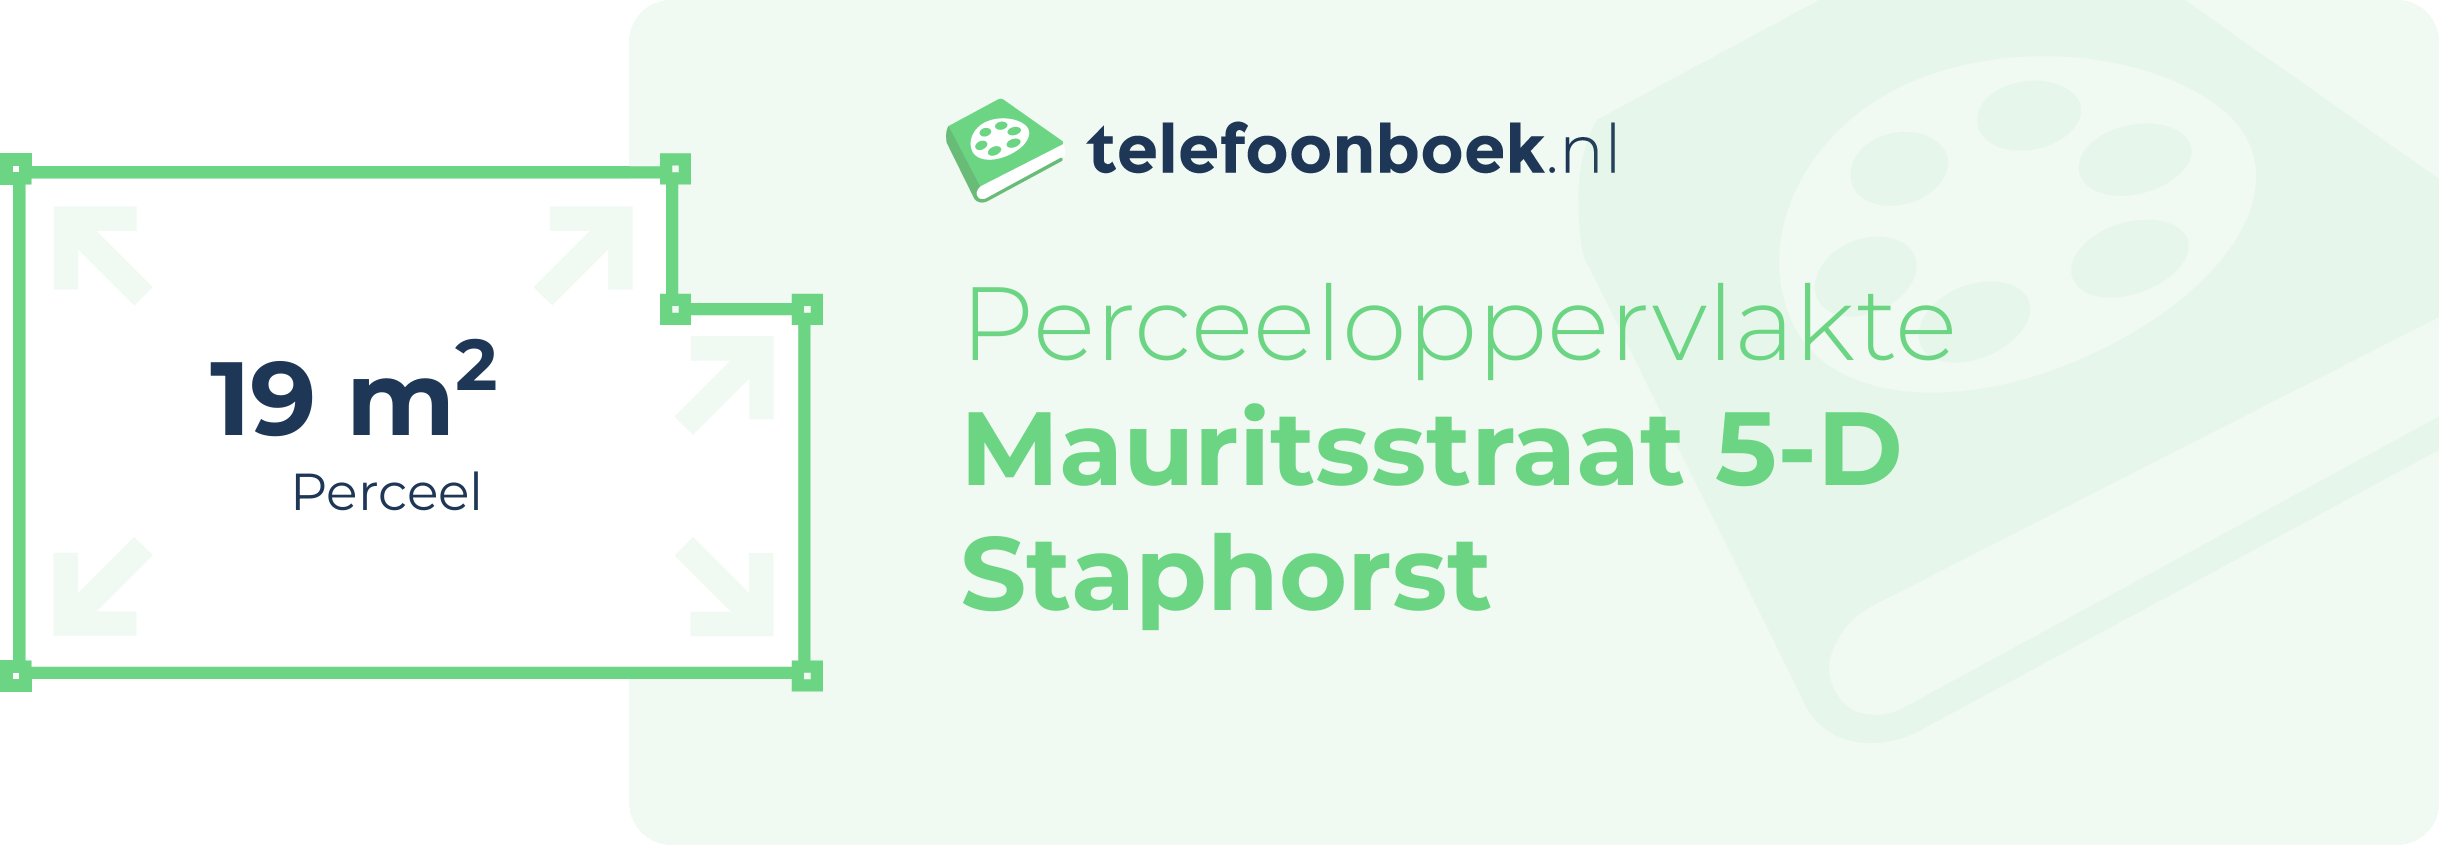 Perceeloppervlakte Mauritsstraat 5-D Staphorst